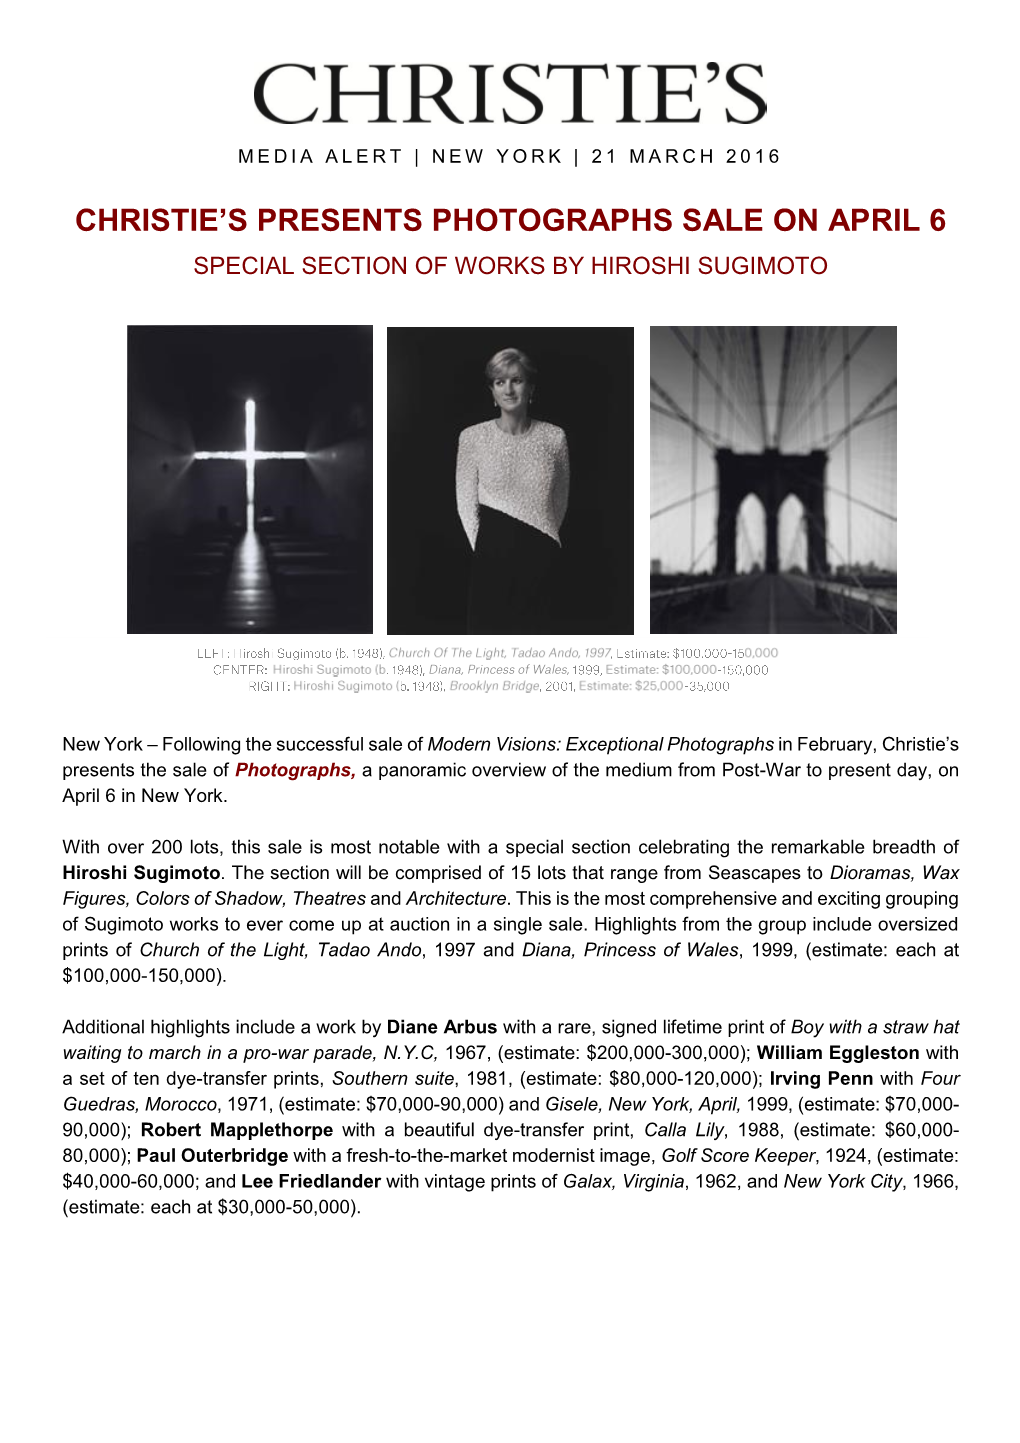 Christie's Presents Photographs Sale on April 6